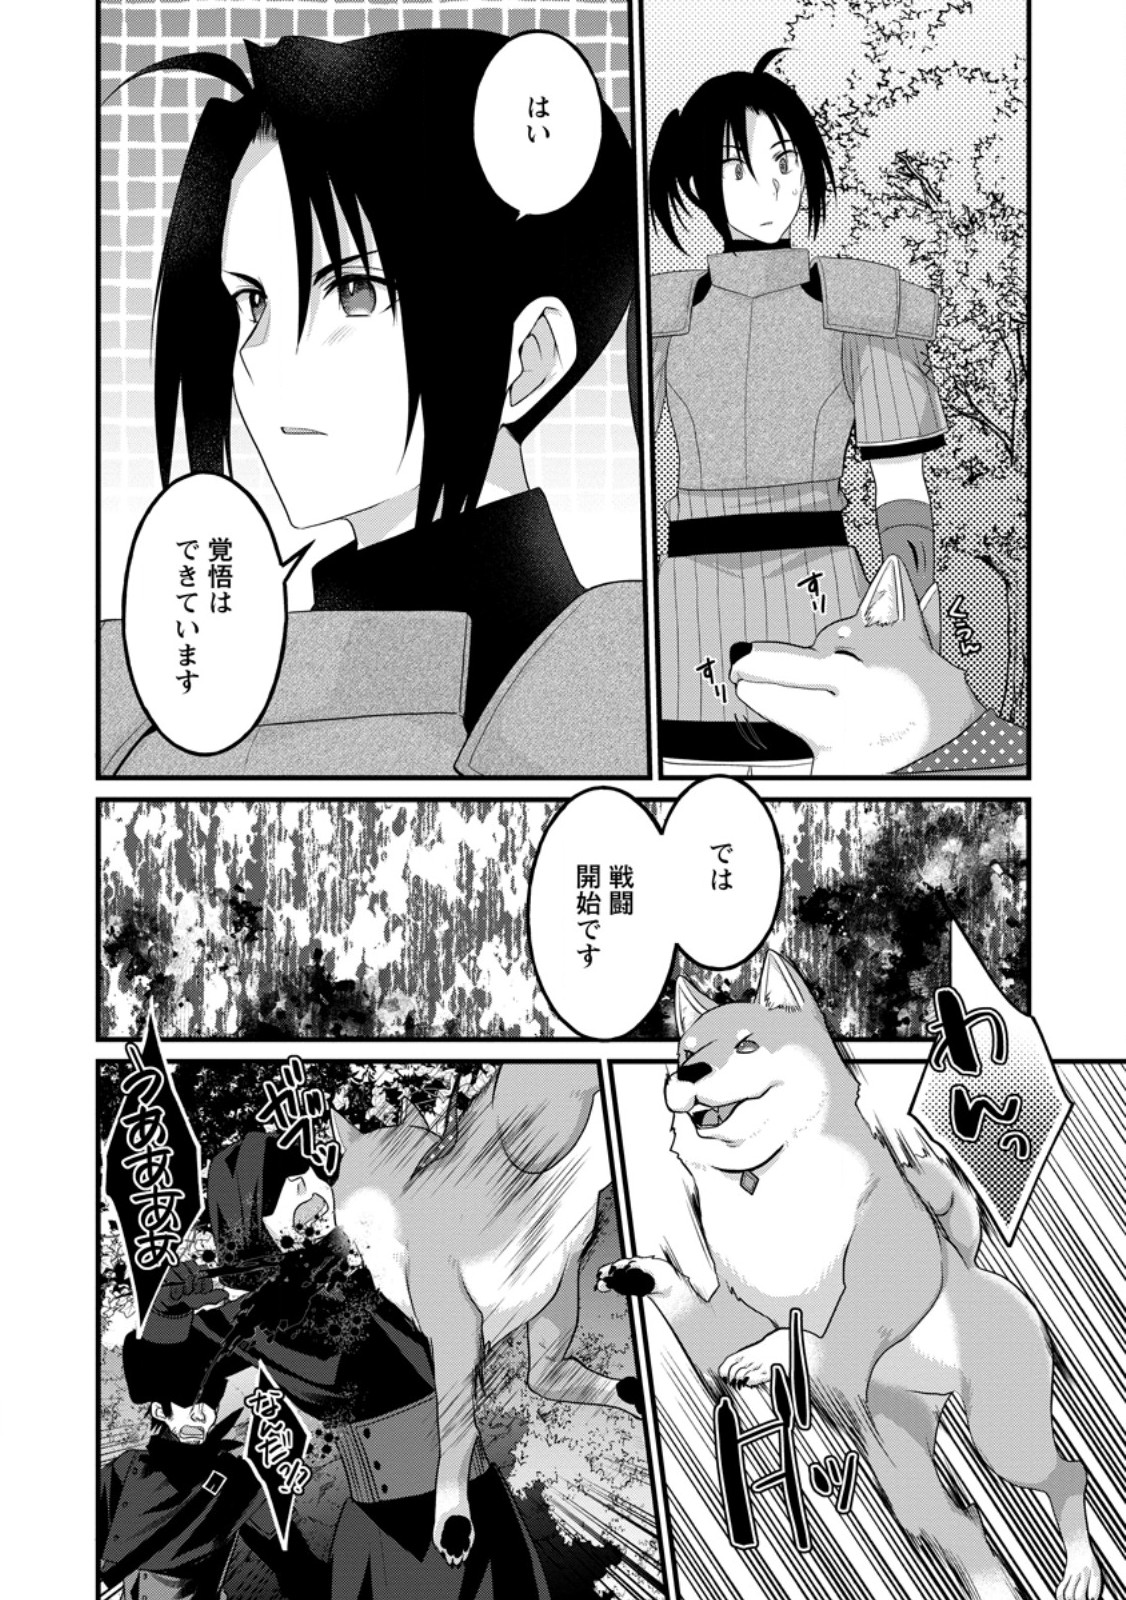 10-nen Goshi no HikiNEET wo Yamete Gaishutsu shitara Jitakugo to Isekai ni Tenishiteta - Chapter 14.2 - Page 8